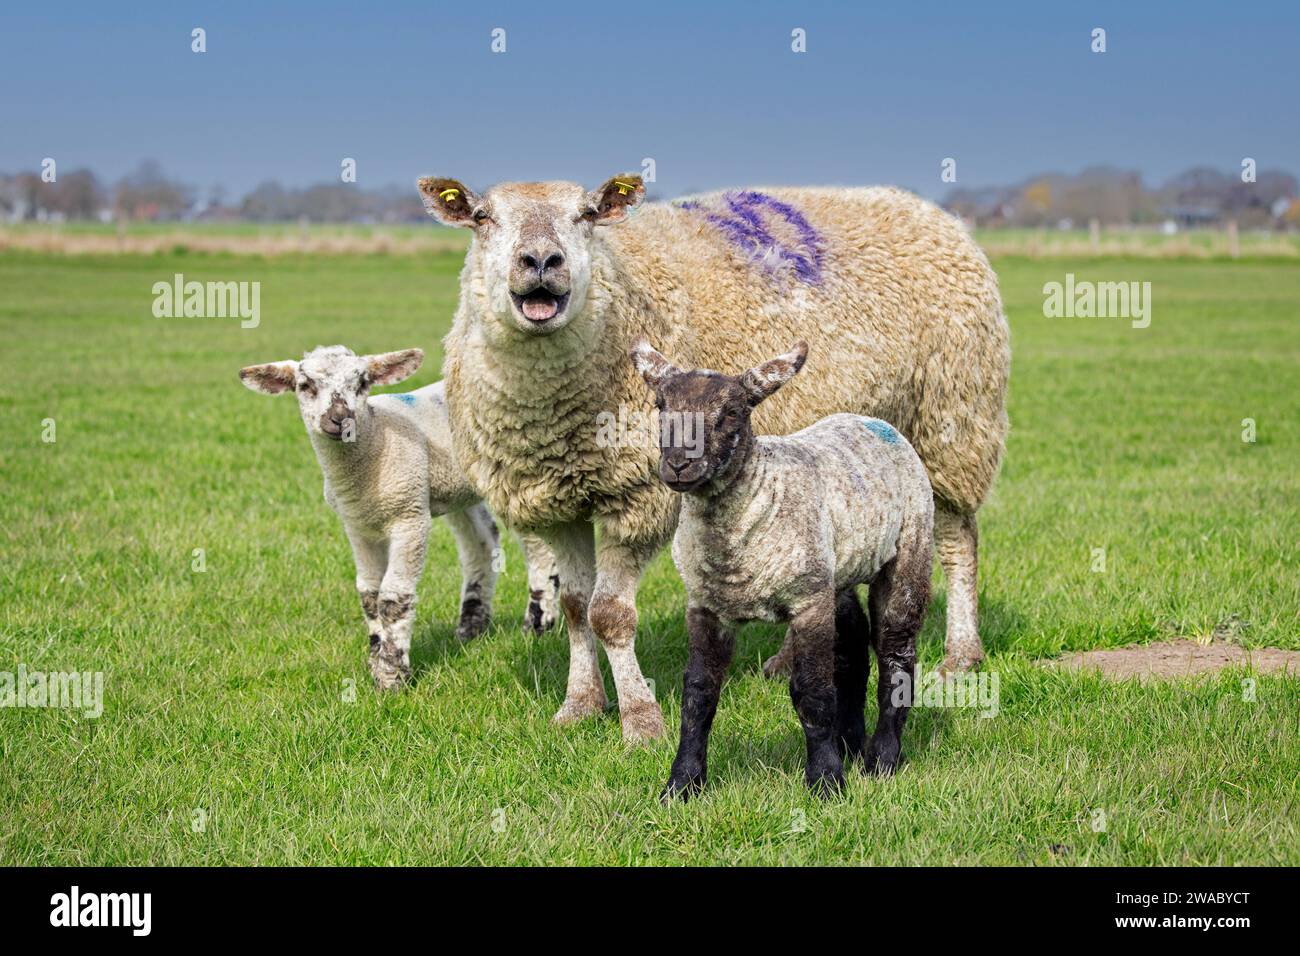 Saigner des brebis domestiques avec des agneaux noirs et blancs jumeaux dans les prairies / pâturages au printemps, Schleswig-Holstein, Allemagne Banque D'Images